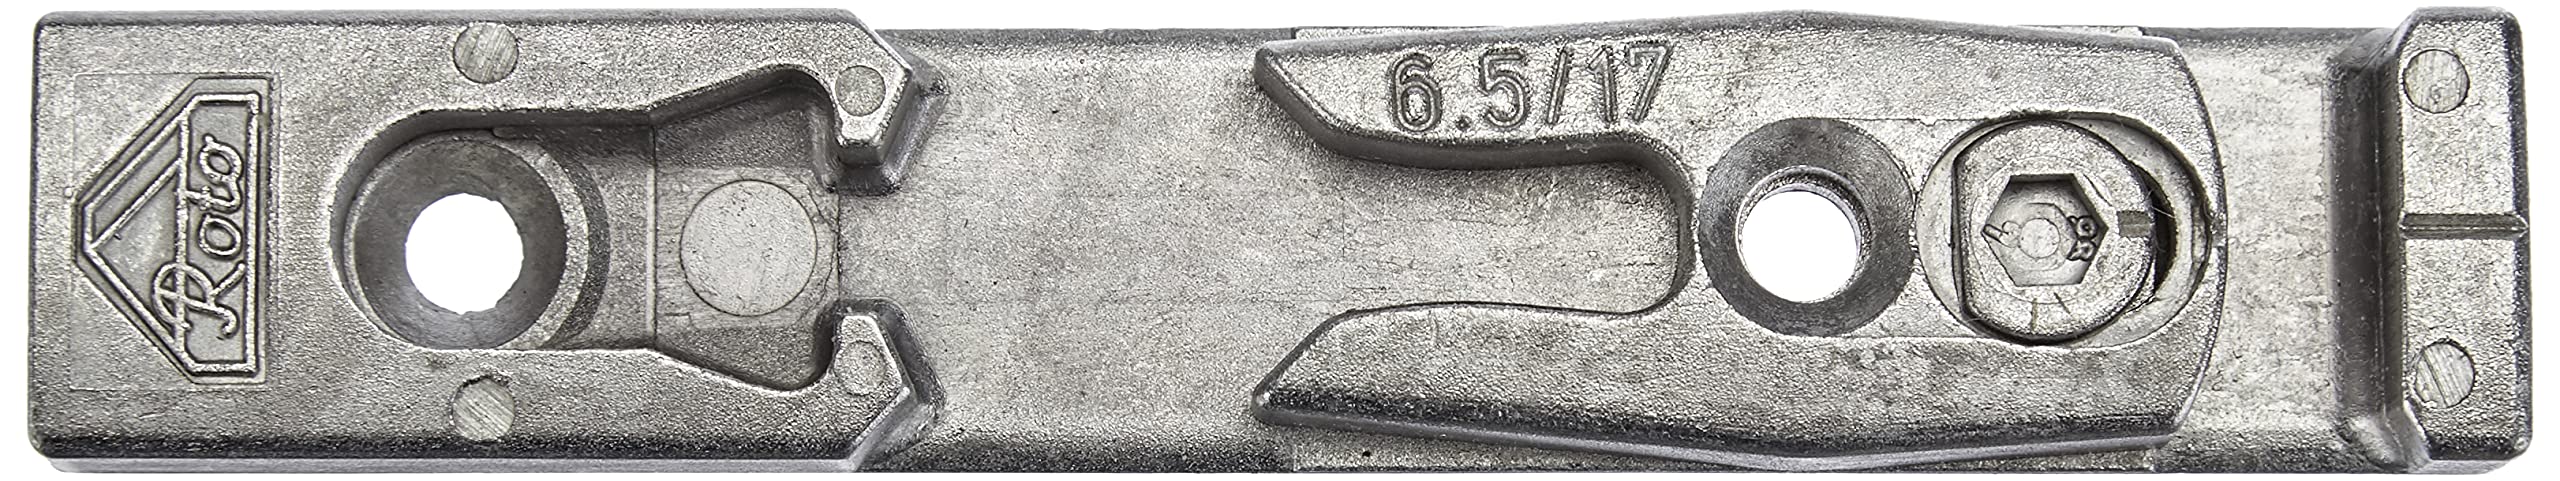 Roto DK Schließstück 18 mm Falz, silber, 648233990000